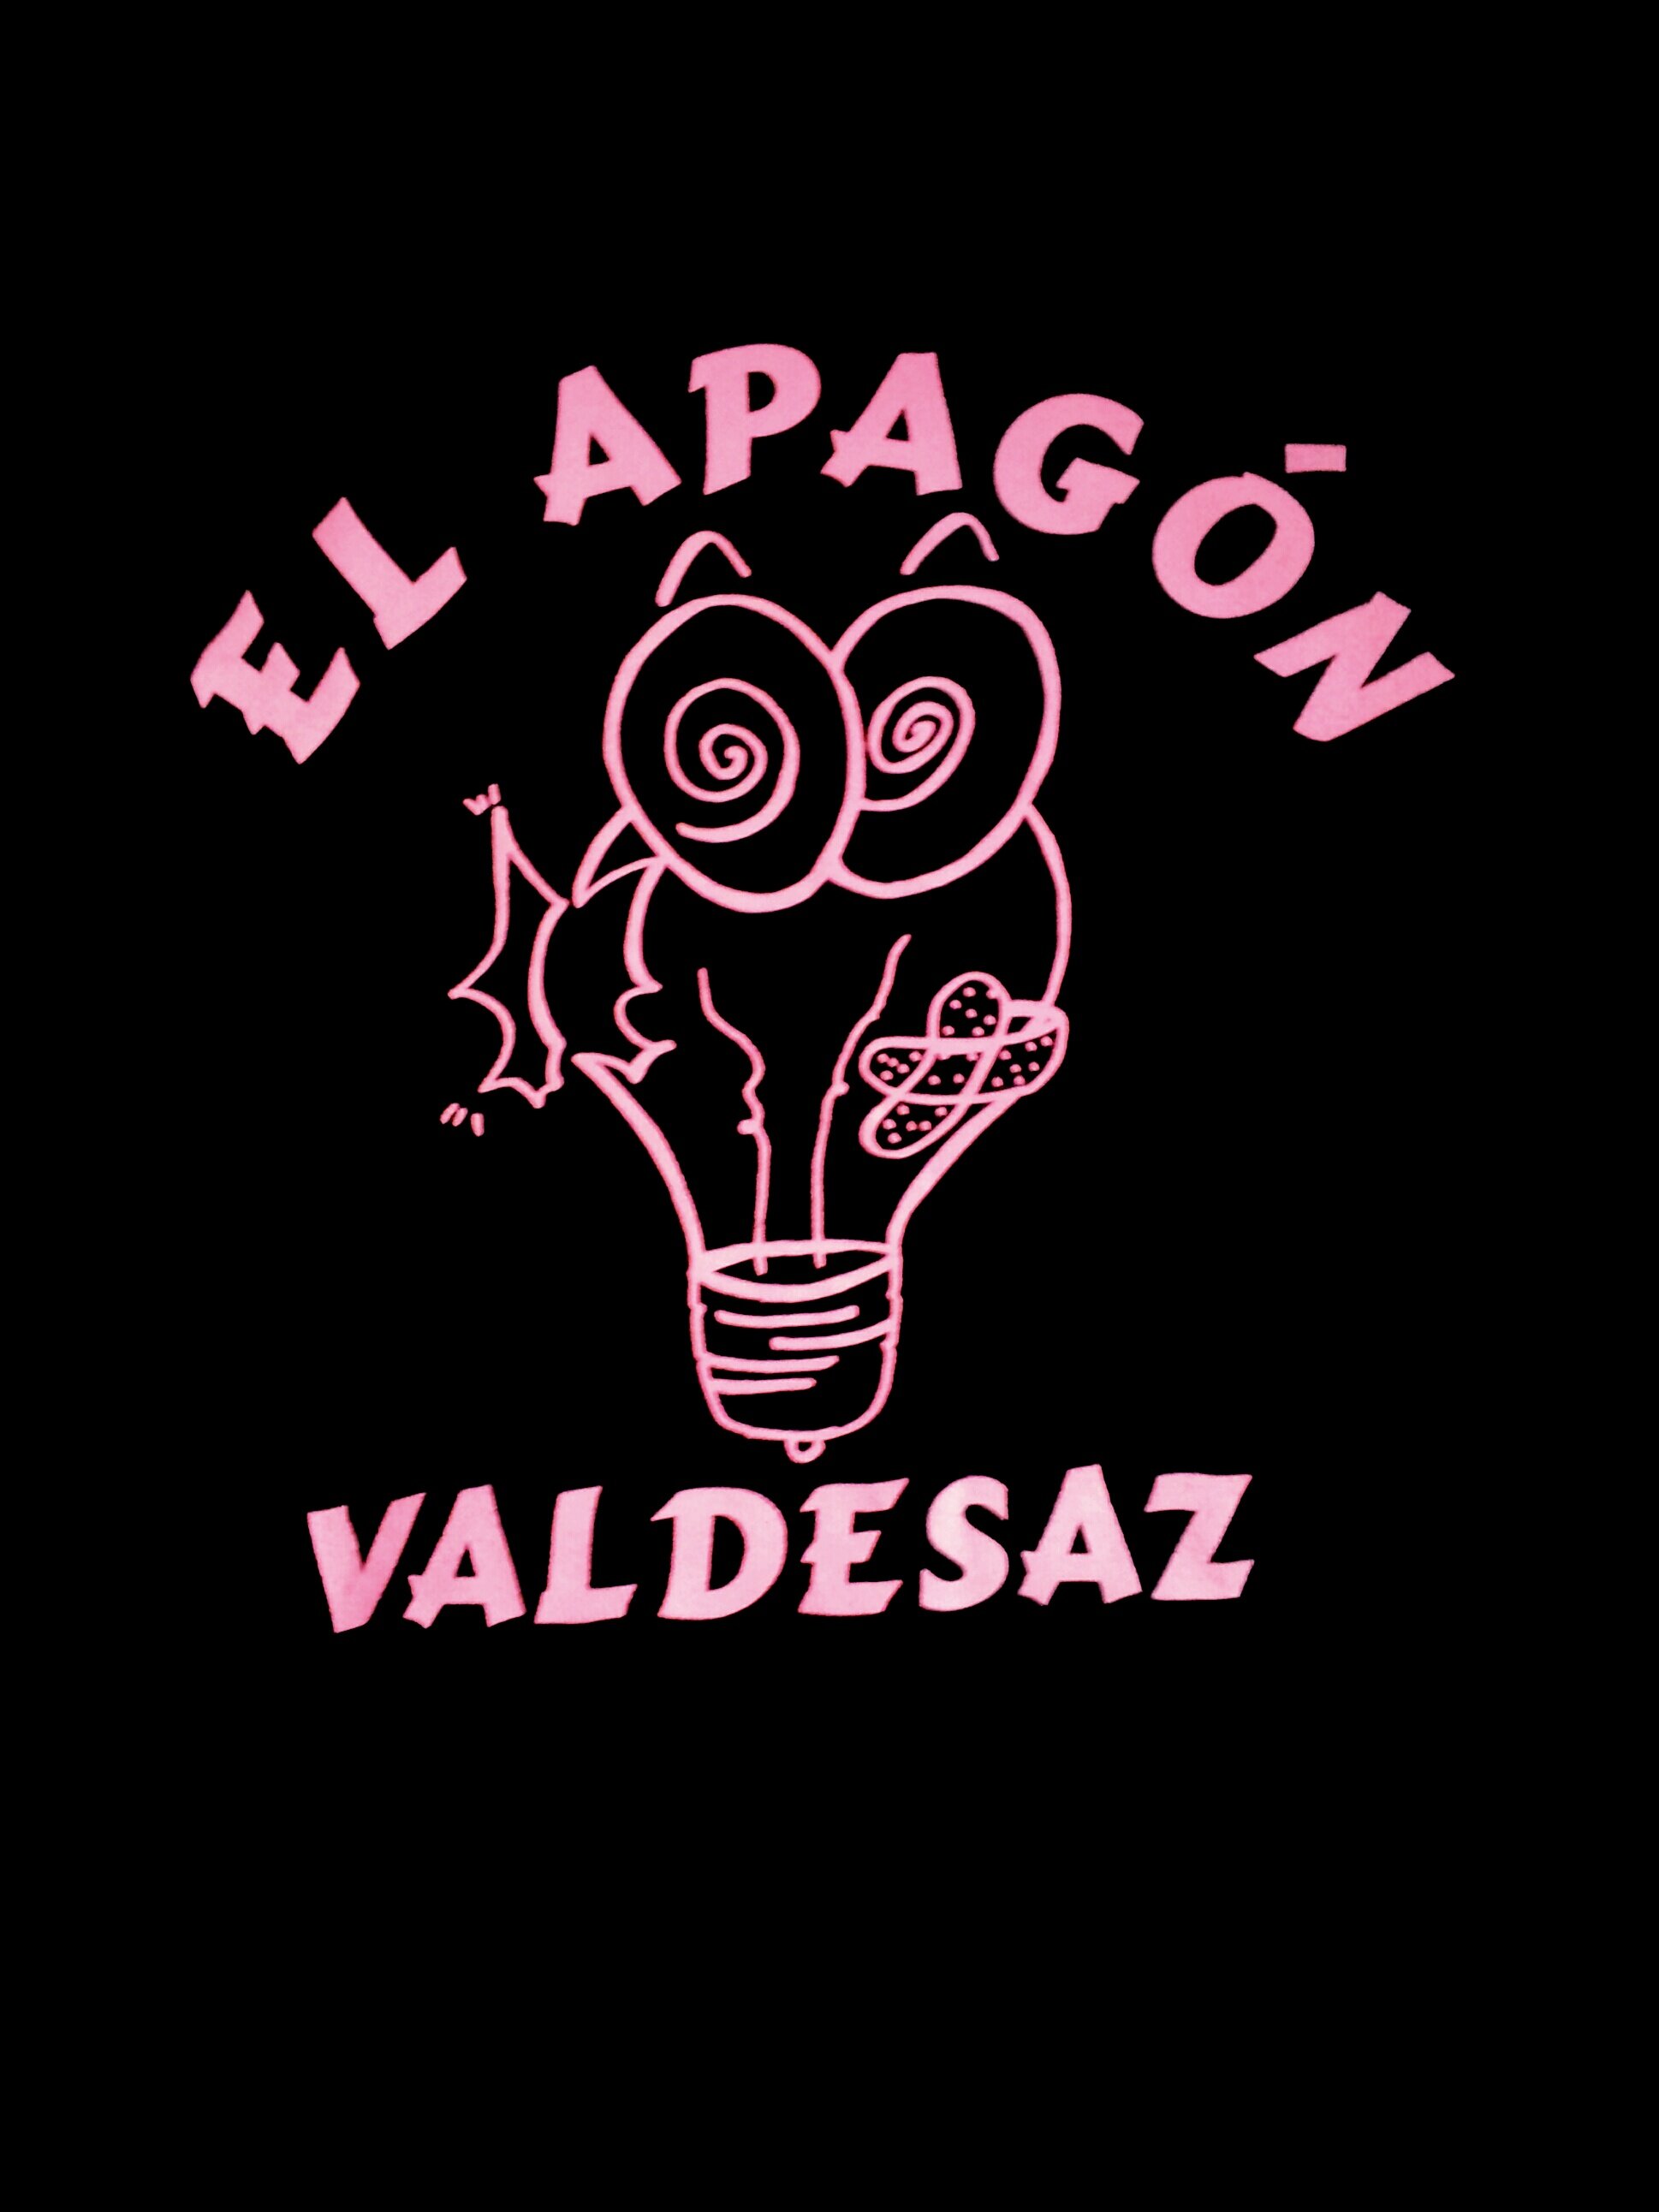 La peña El Apagón ya tiene Twitter oficial!!!! A LO LOCOOOO CHAVALAAAS!!! ;)